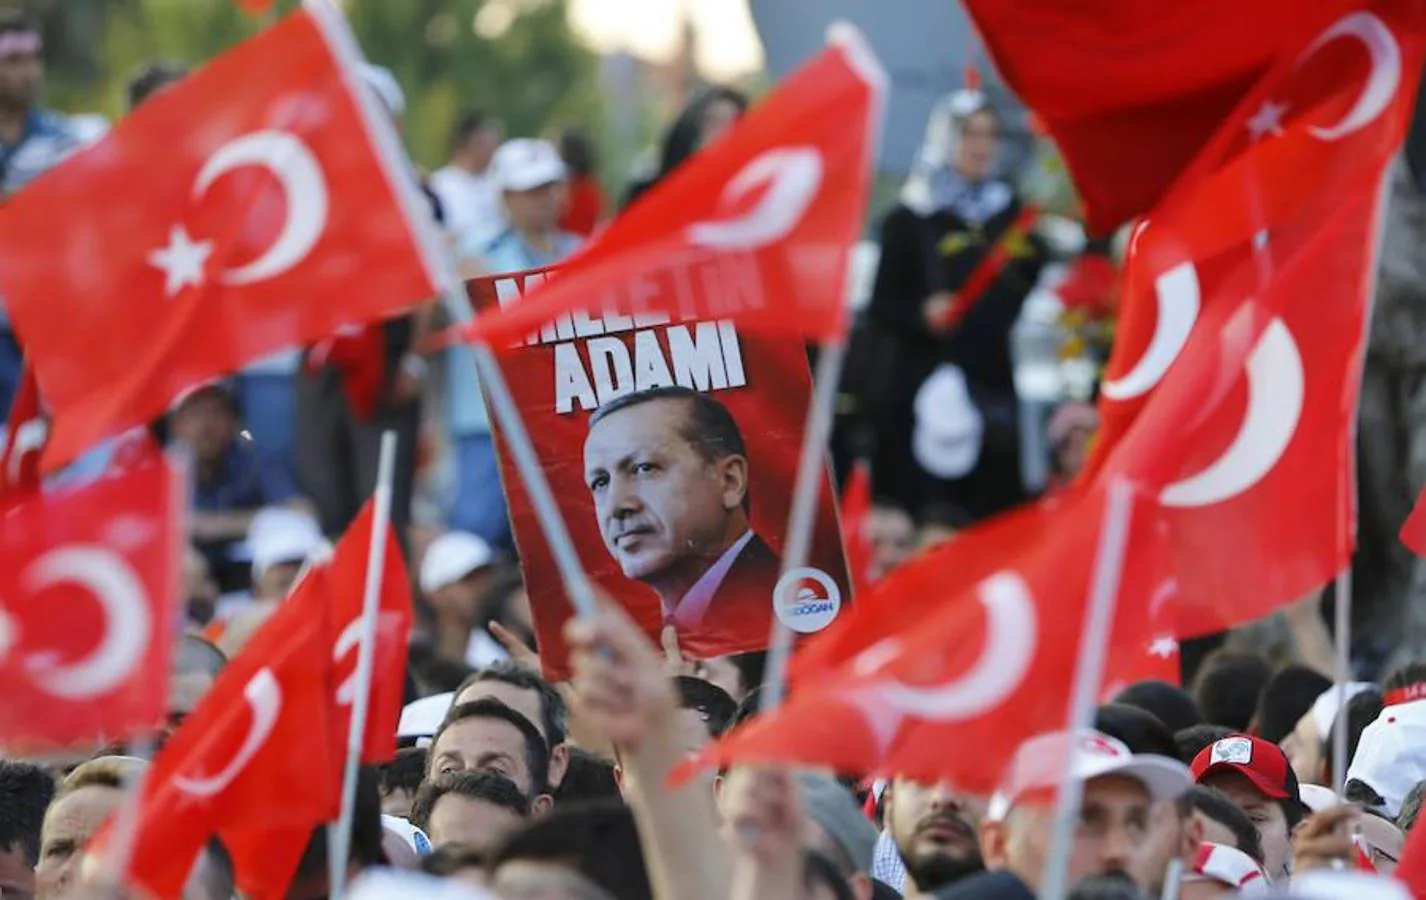 «Ningún poder está por encima de la voluntad popular», aseguró el presidente turco nada más aterrizar en Estambul ante las televisiones del país